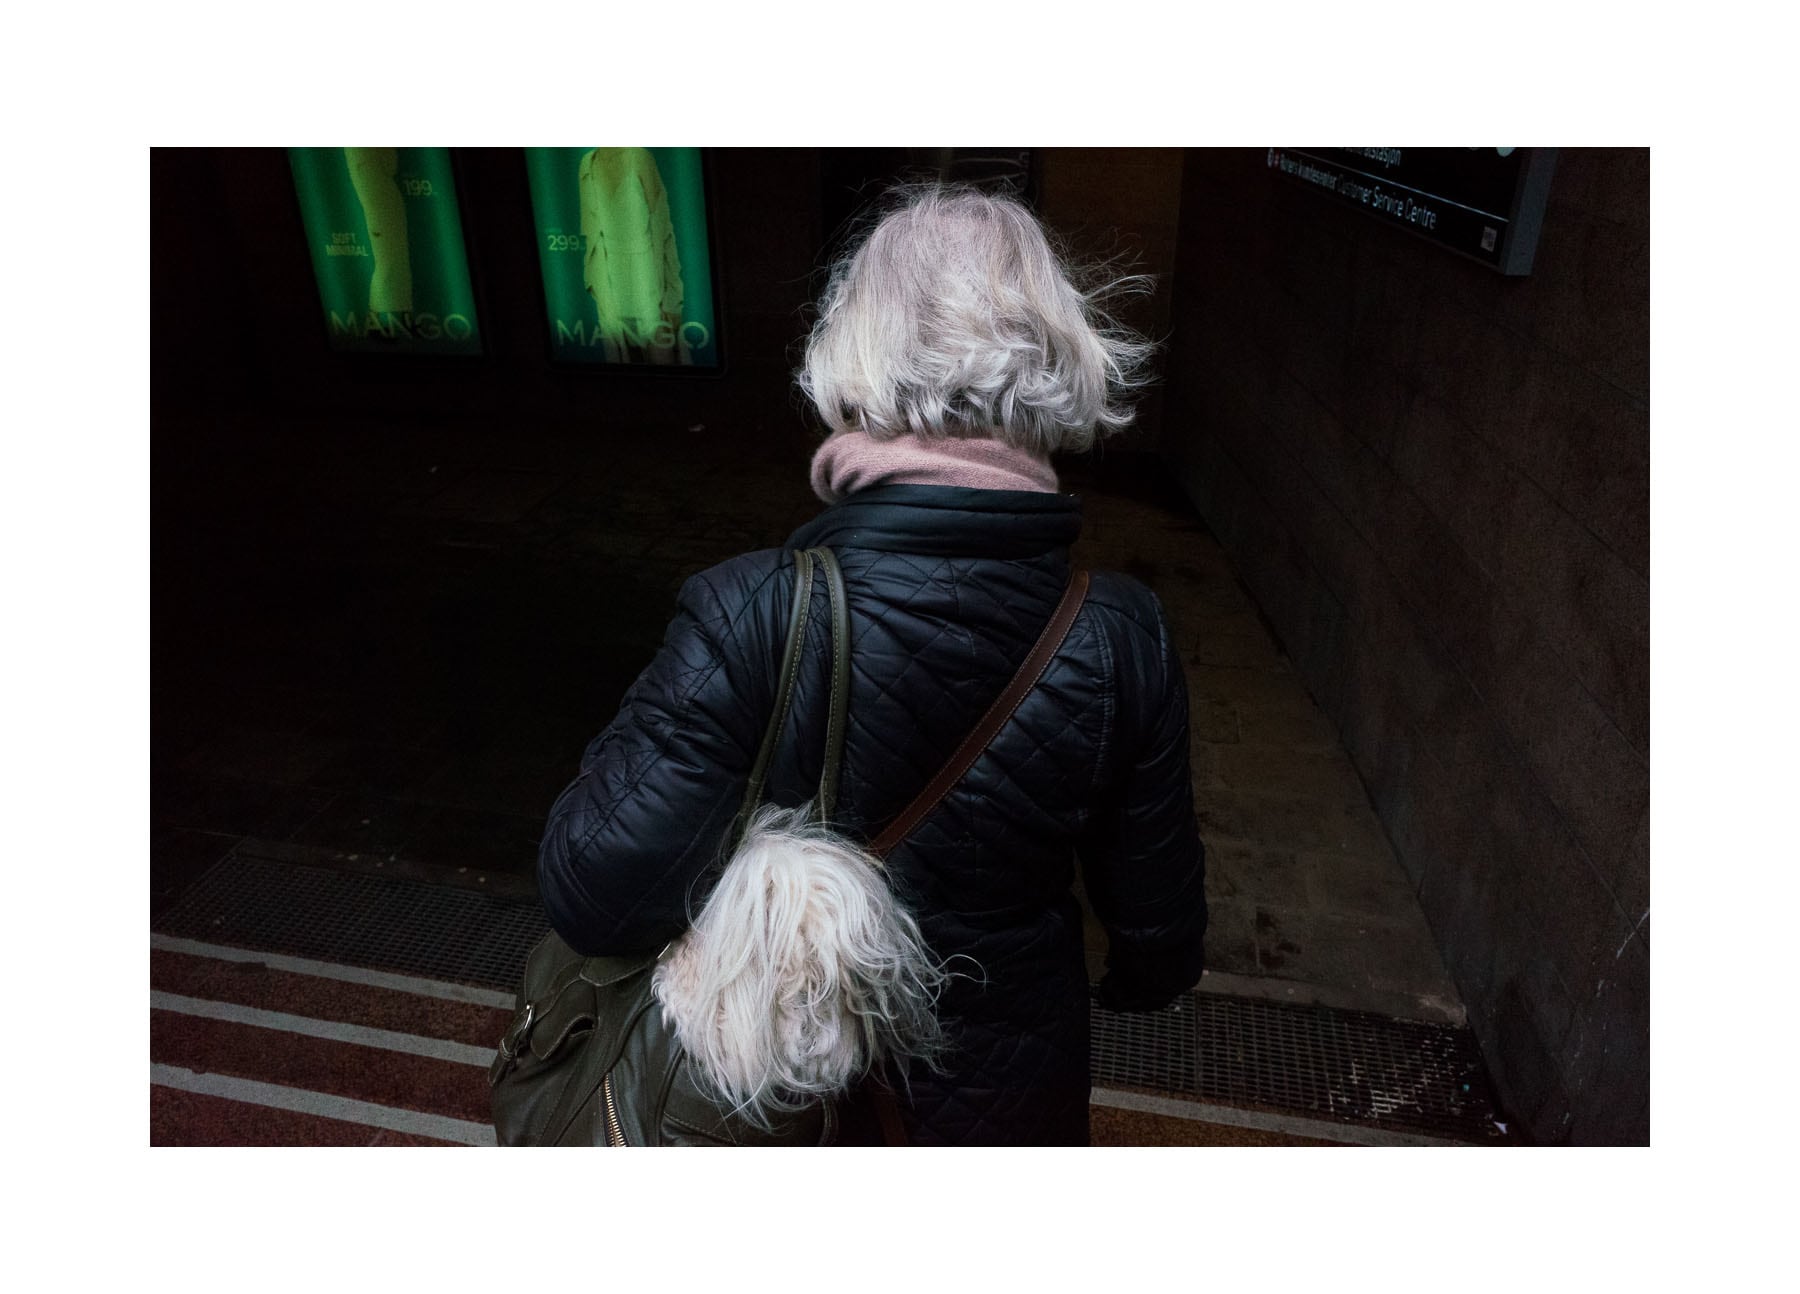 Fotograaf Pau Buscató slentert door de stad, op zoek naar het toeval